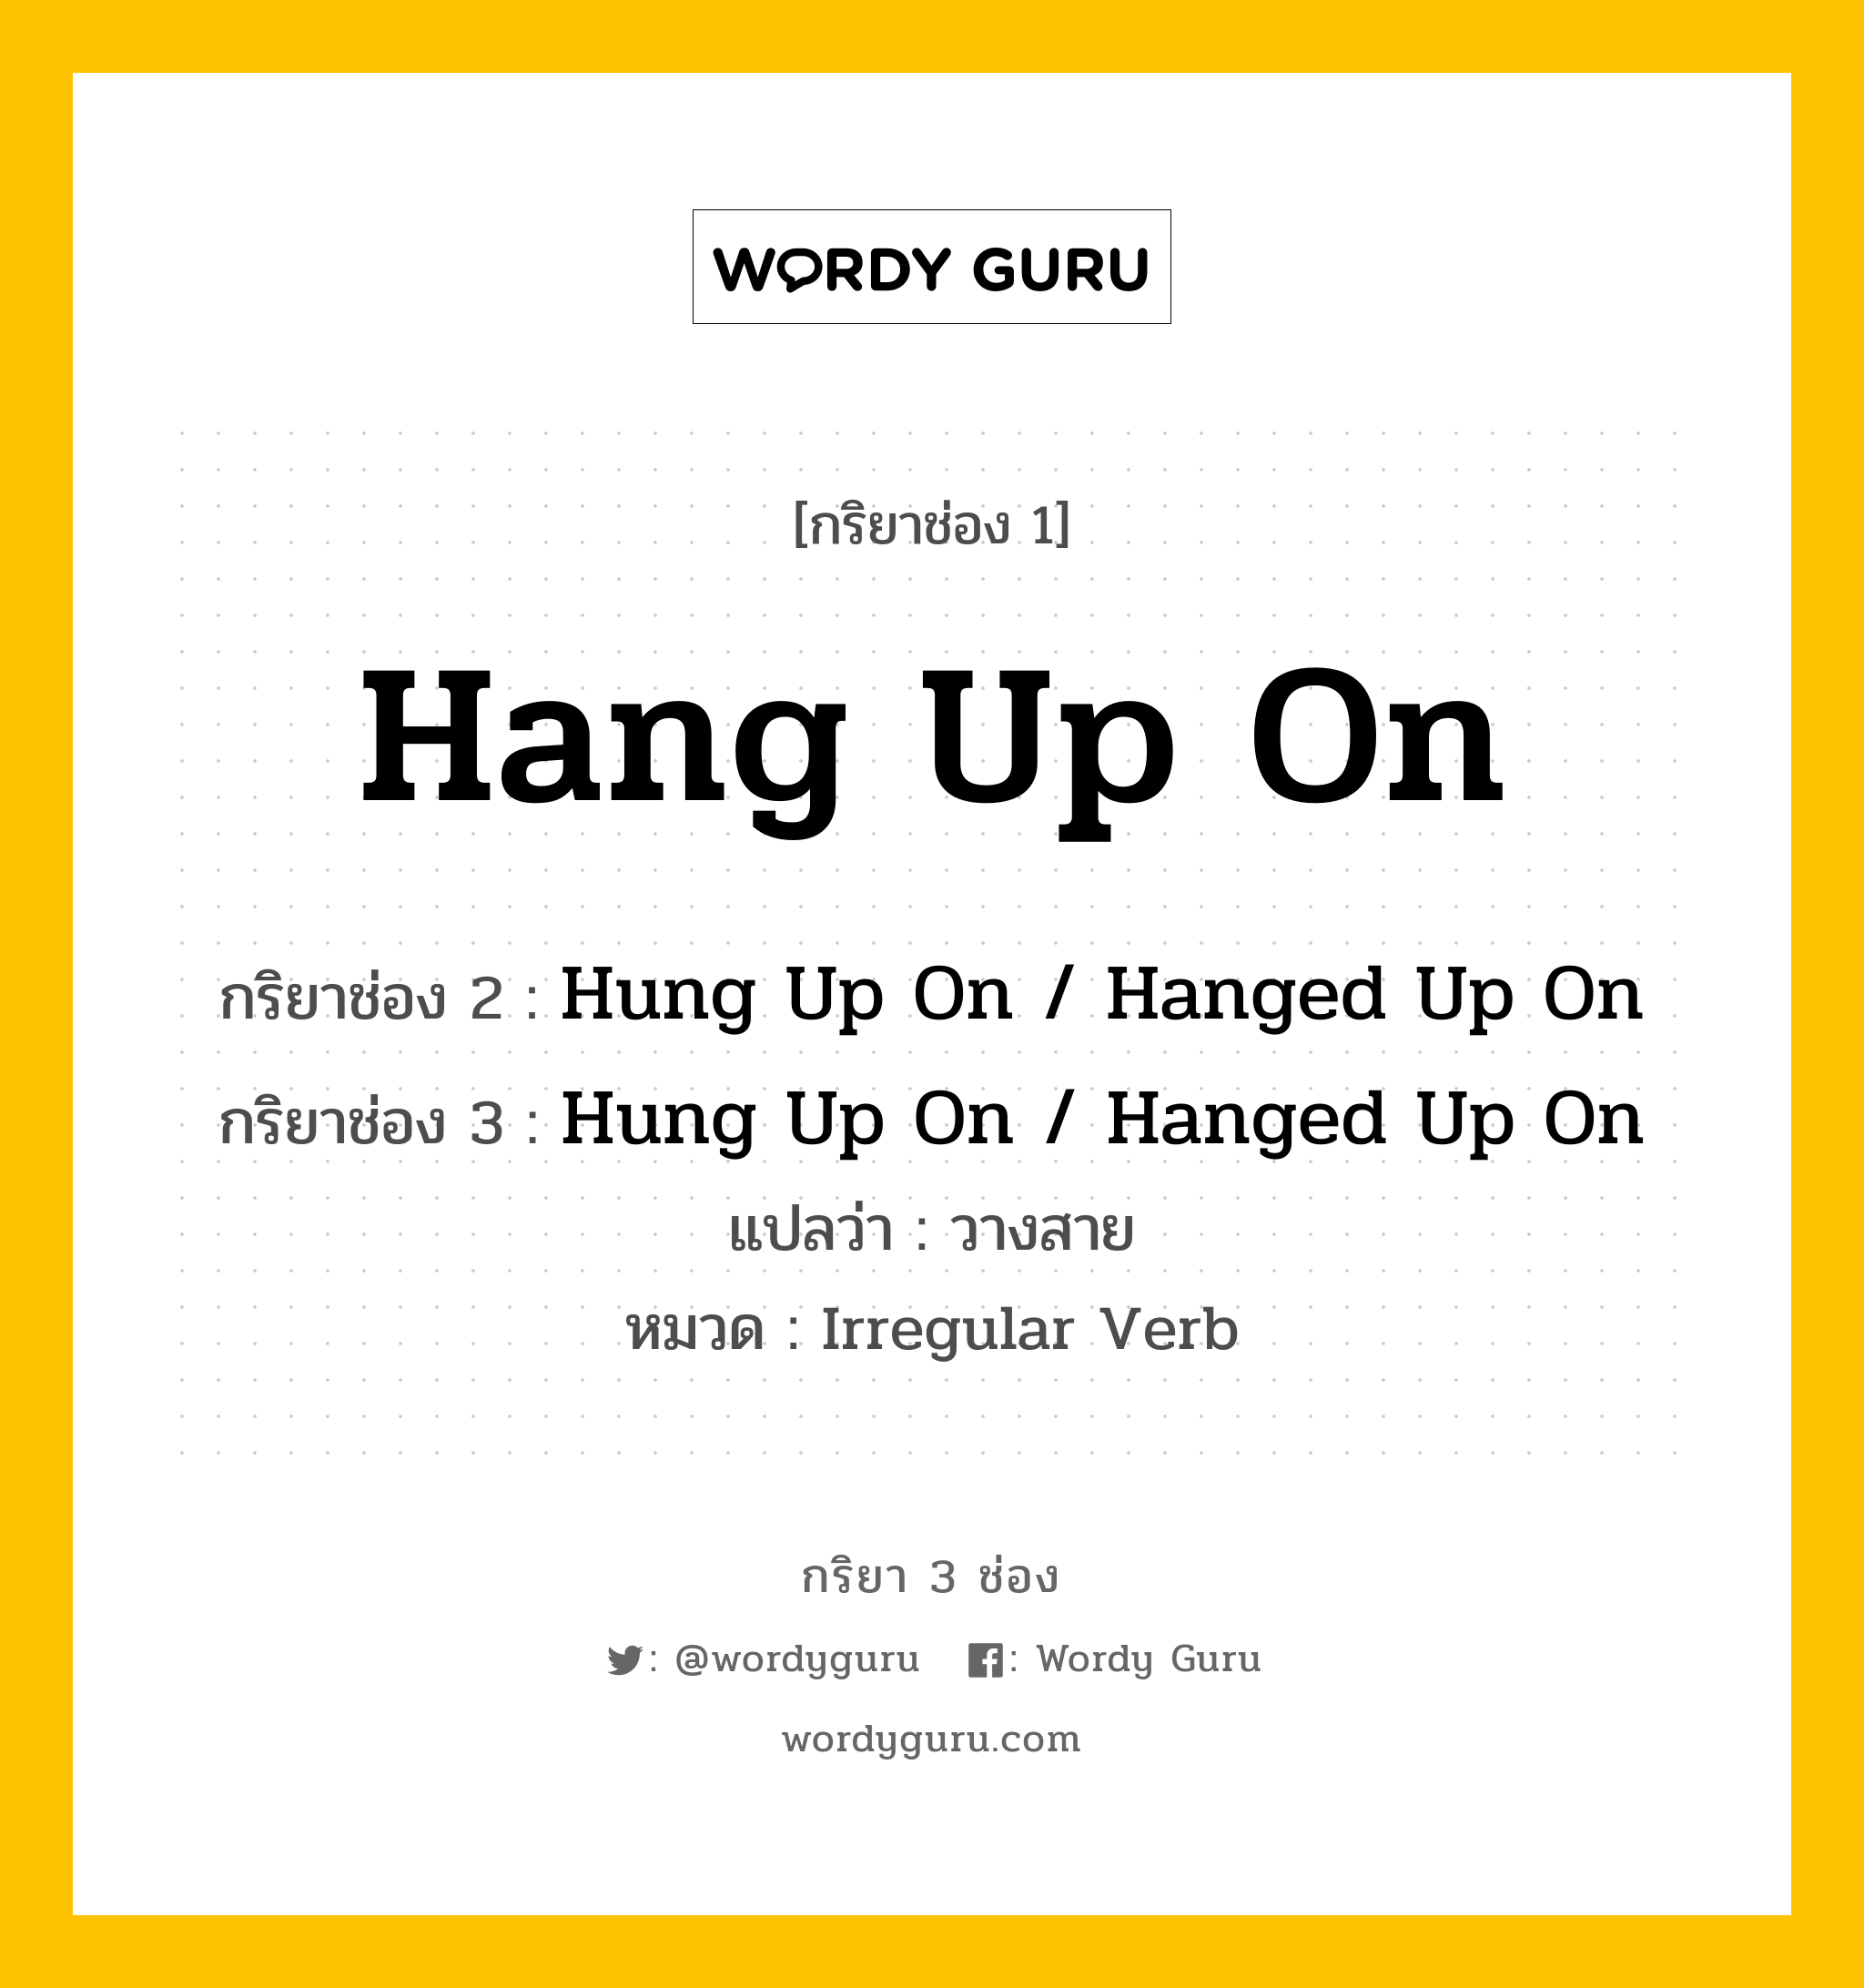 กริยา 3 ช่อง: Hang Up On ช่อง 2 Hang Up On ช่อง 3 คืออะไร, กริยาช่อง 1 Hang Up On กริยาช่อง 2 Hung Up On / Hanged Up On กริยาช่อง 3 Hung Up On / Hanged Up On แปลว่า วางสาย หมวด Irregular Verb หมวด Irregular Verb